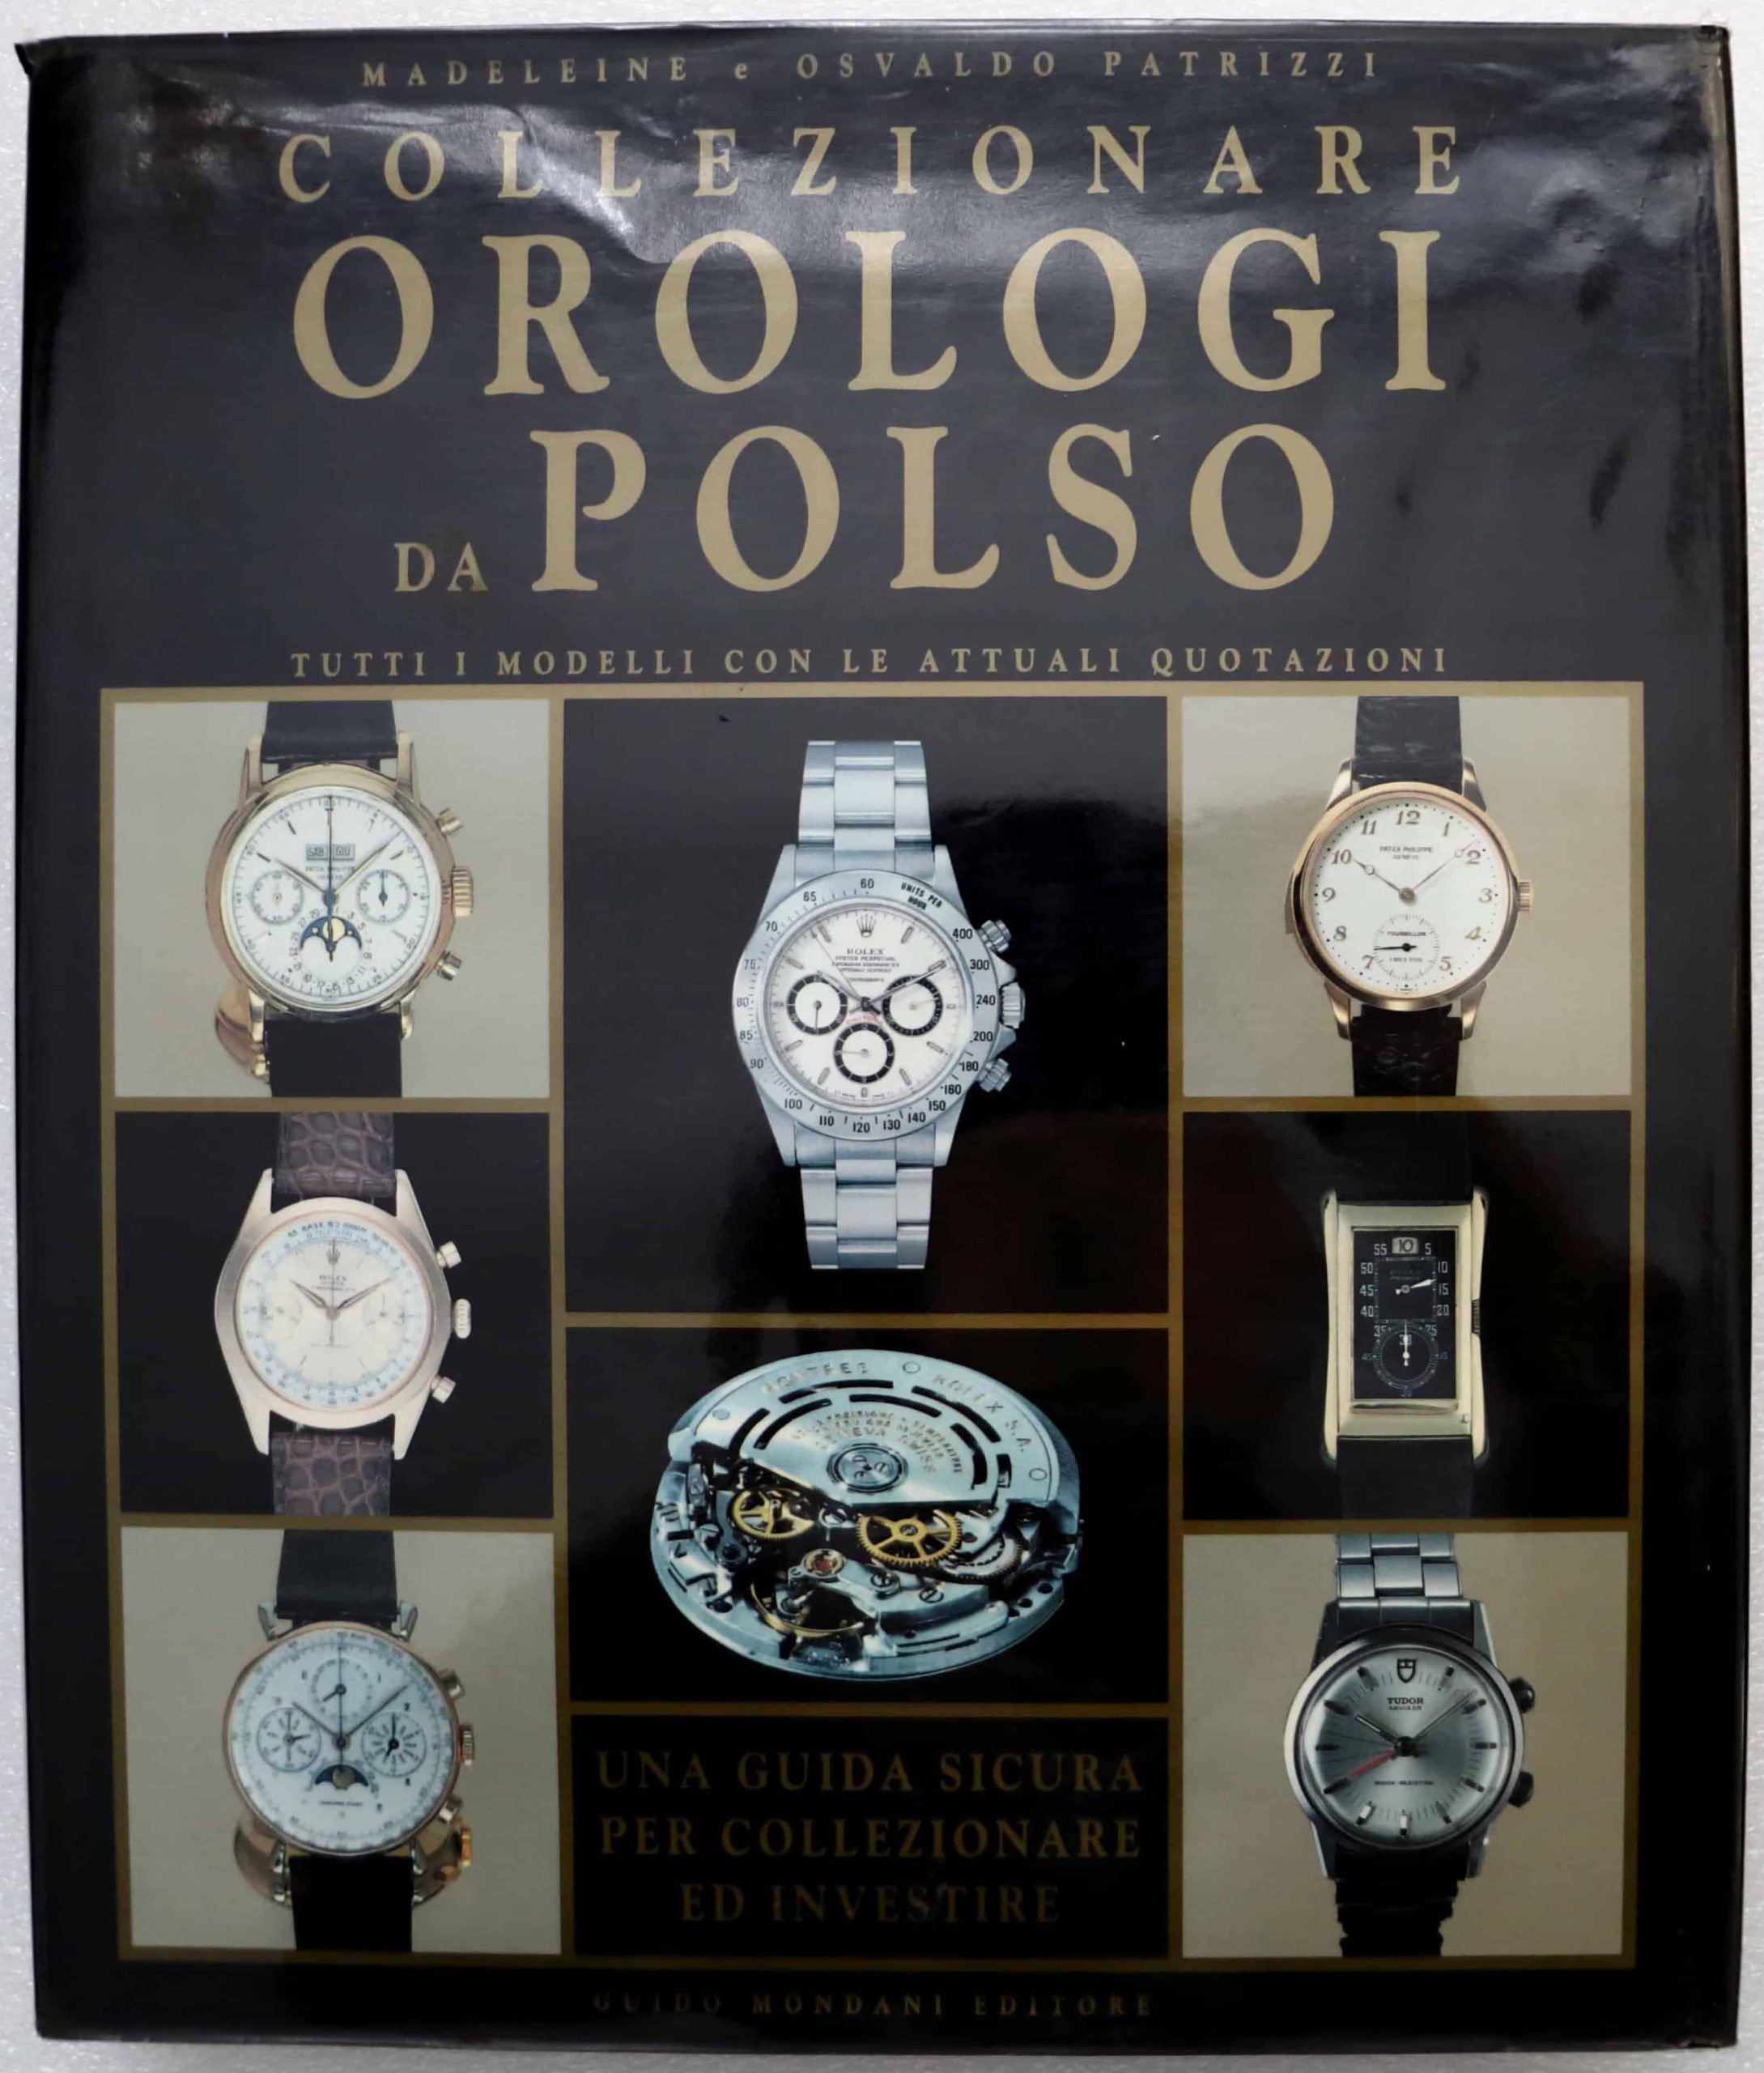 Collezionare-Orologi-da-Polso-Book - Rare Watch Parts